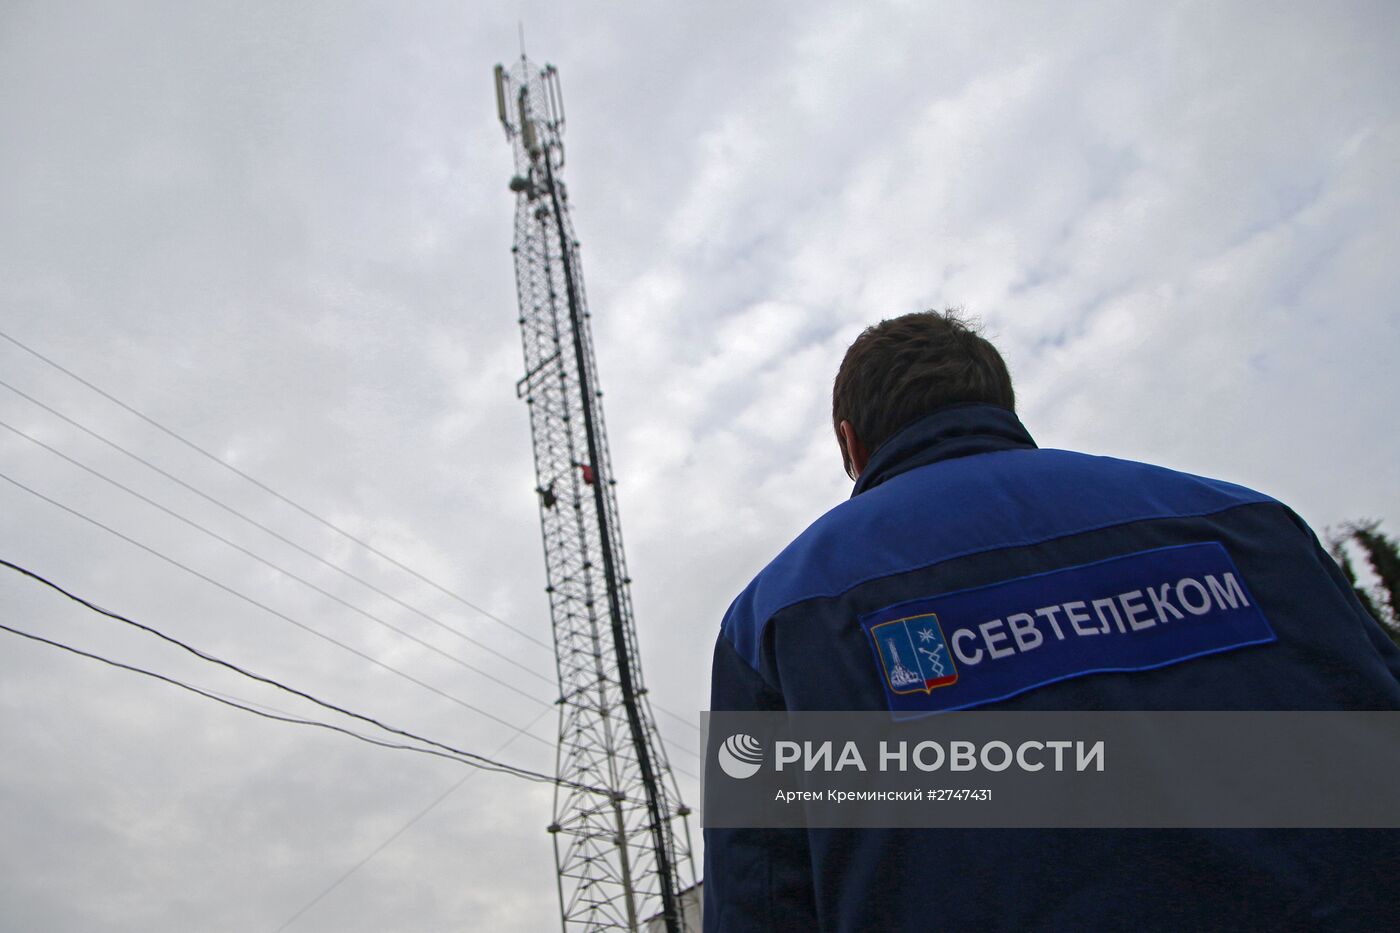 Установка дизель-генераторов на базовые станции мобильной связи в Севастополе